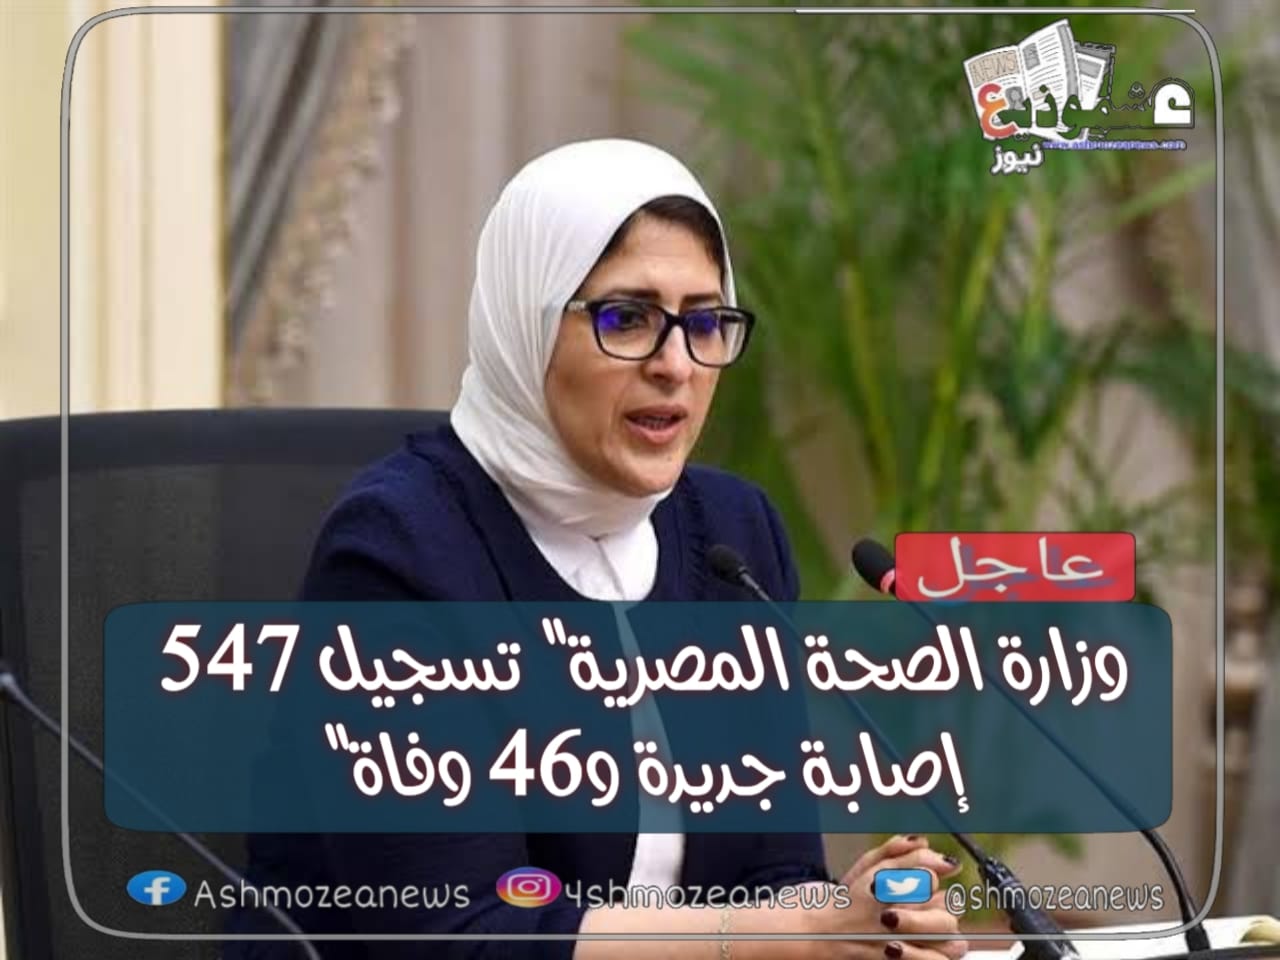 وزارة الصحة المصرية" تسجيل 547 إصابة جديدة و46 وفاة" 